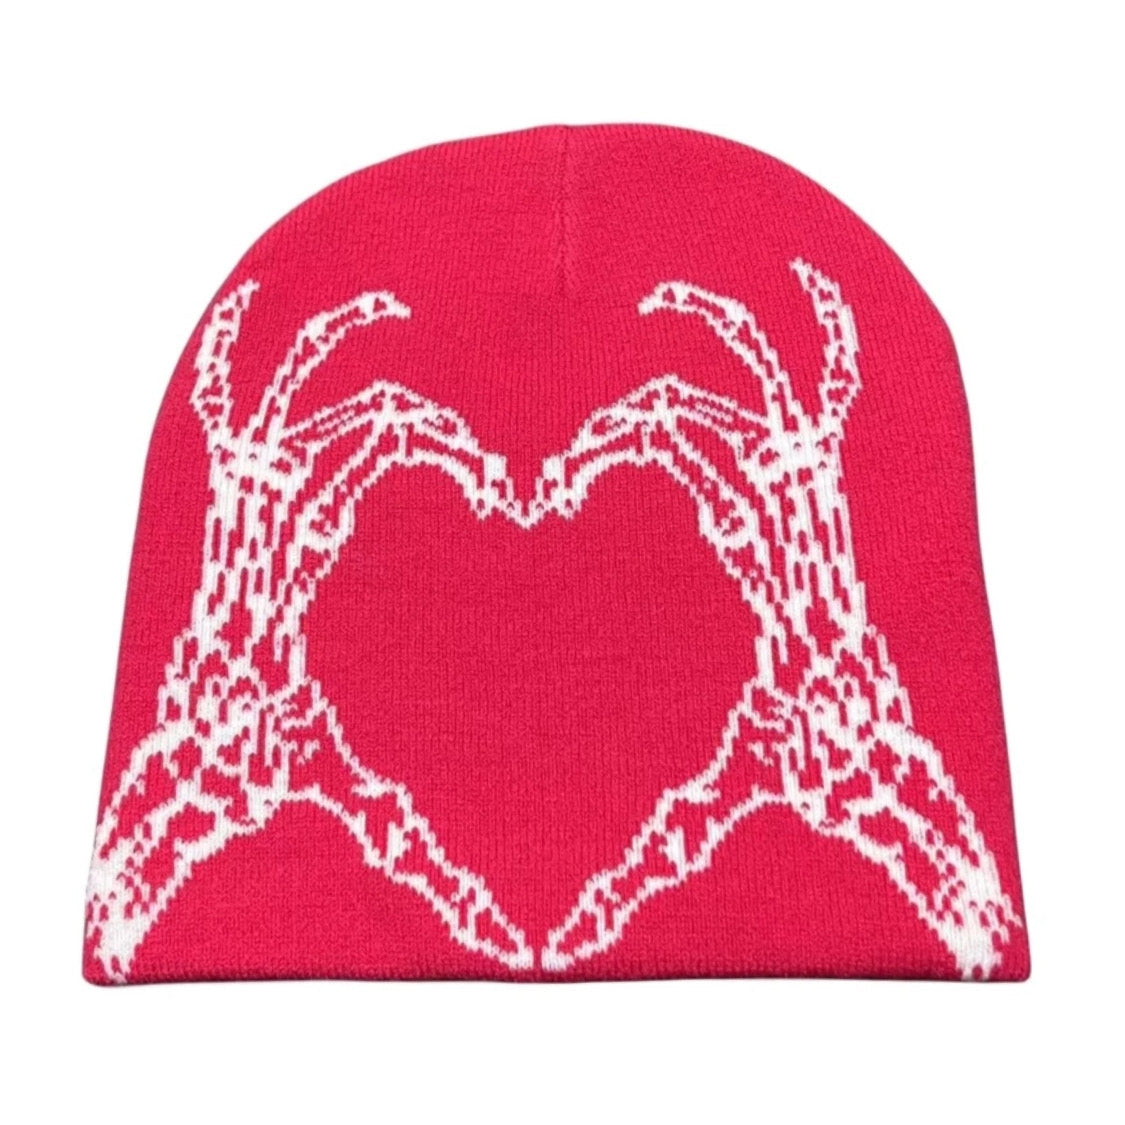 red rose skeleton heart hat